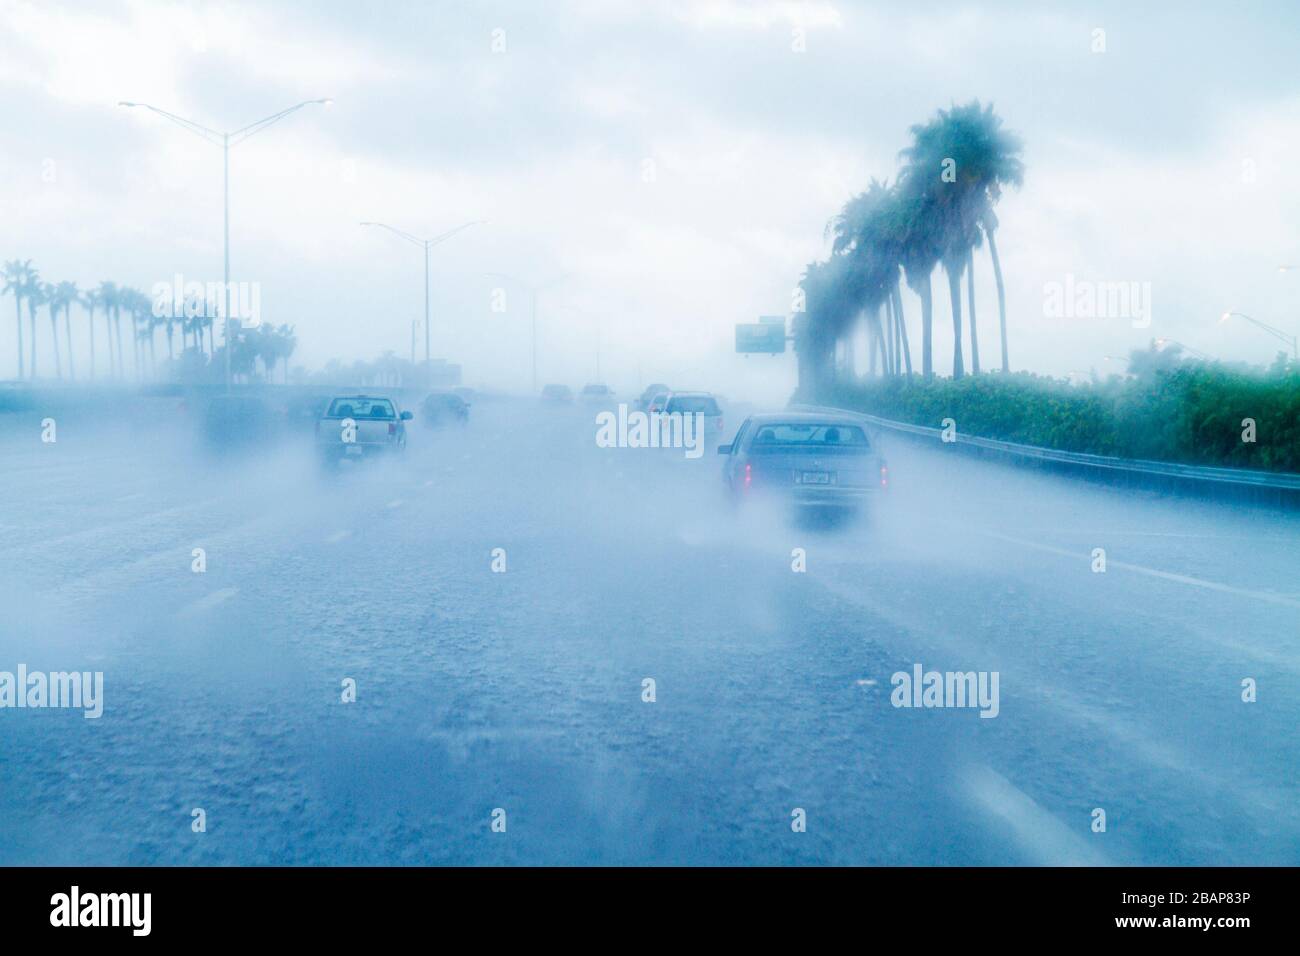 Floride,Hollywood,Interstate 95,I 95,pluie,pluie,pluie,forte,déversante,visibilité limitée,autoroute,conduite,circulation,dangereux,prudence,vue sur le pare-brise Banque D'Images